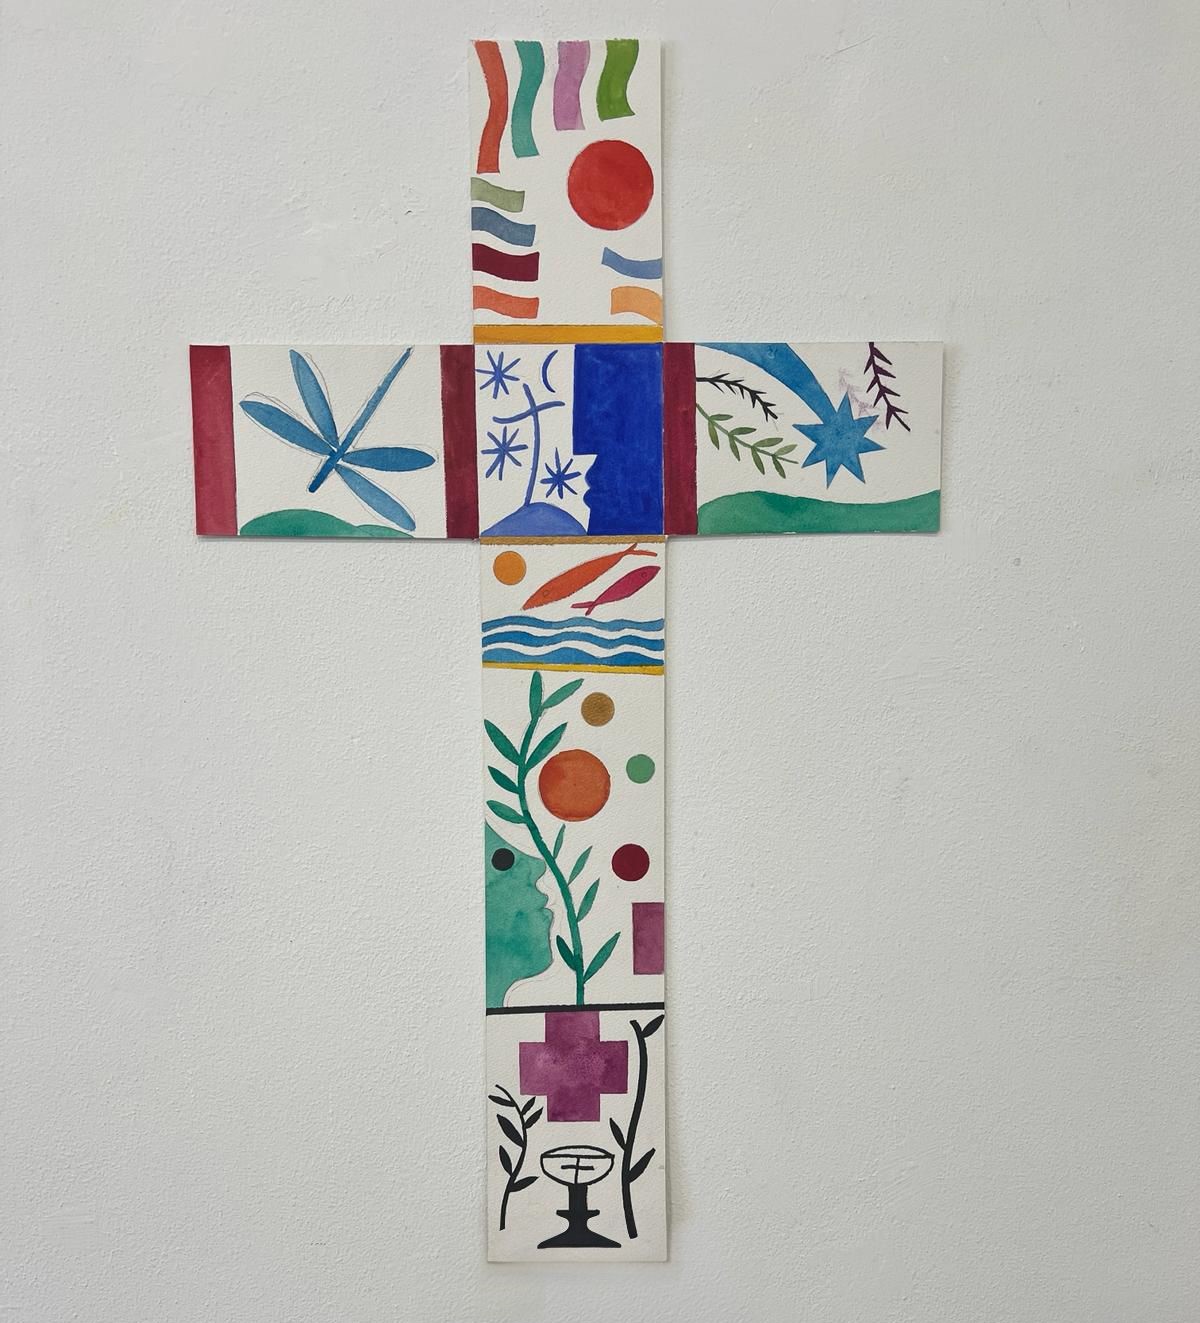 Croix de la Journée mondiale des enfants, offerte par l’artiste Mimmo Paladino